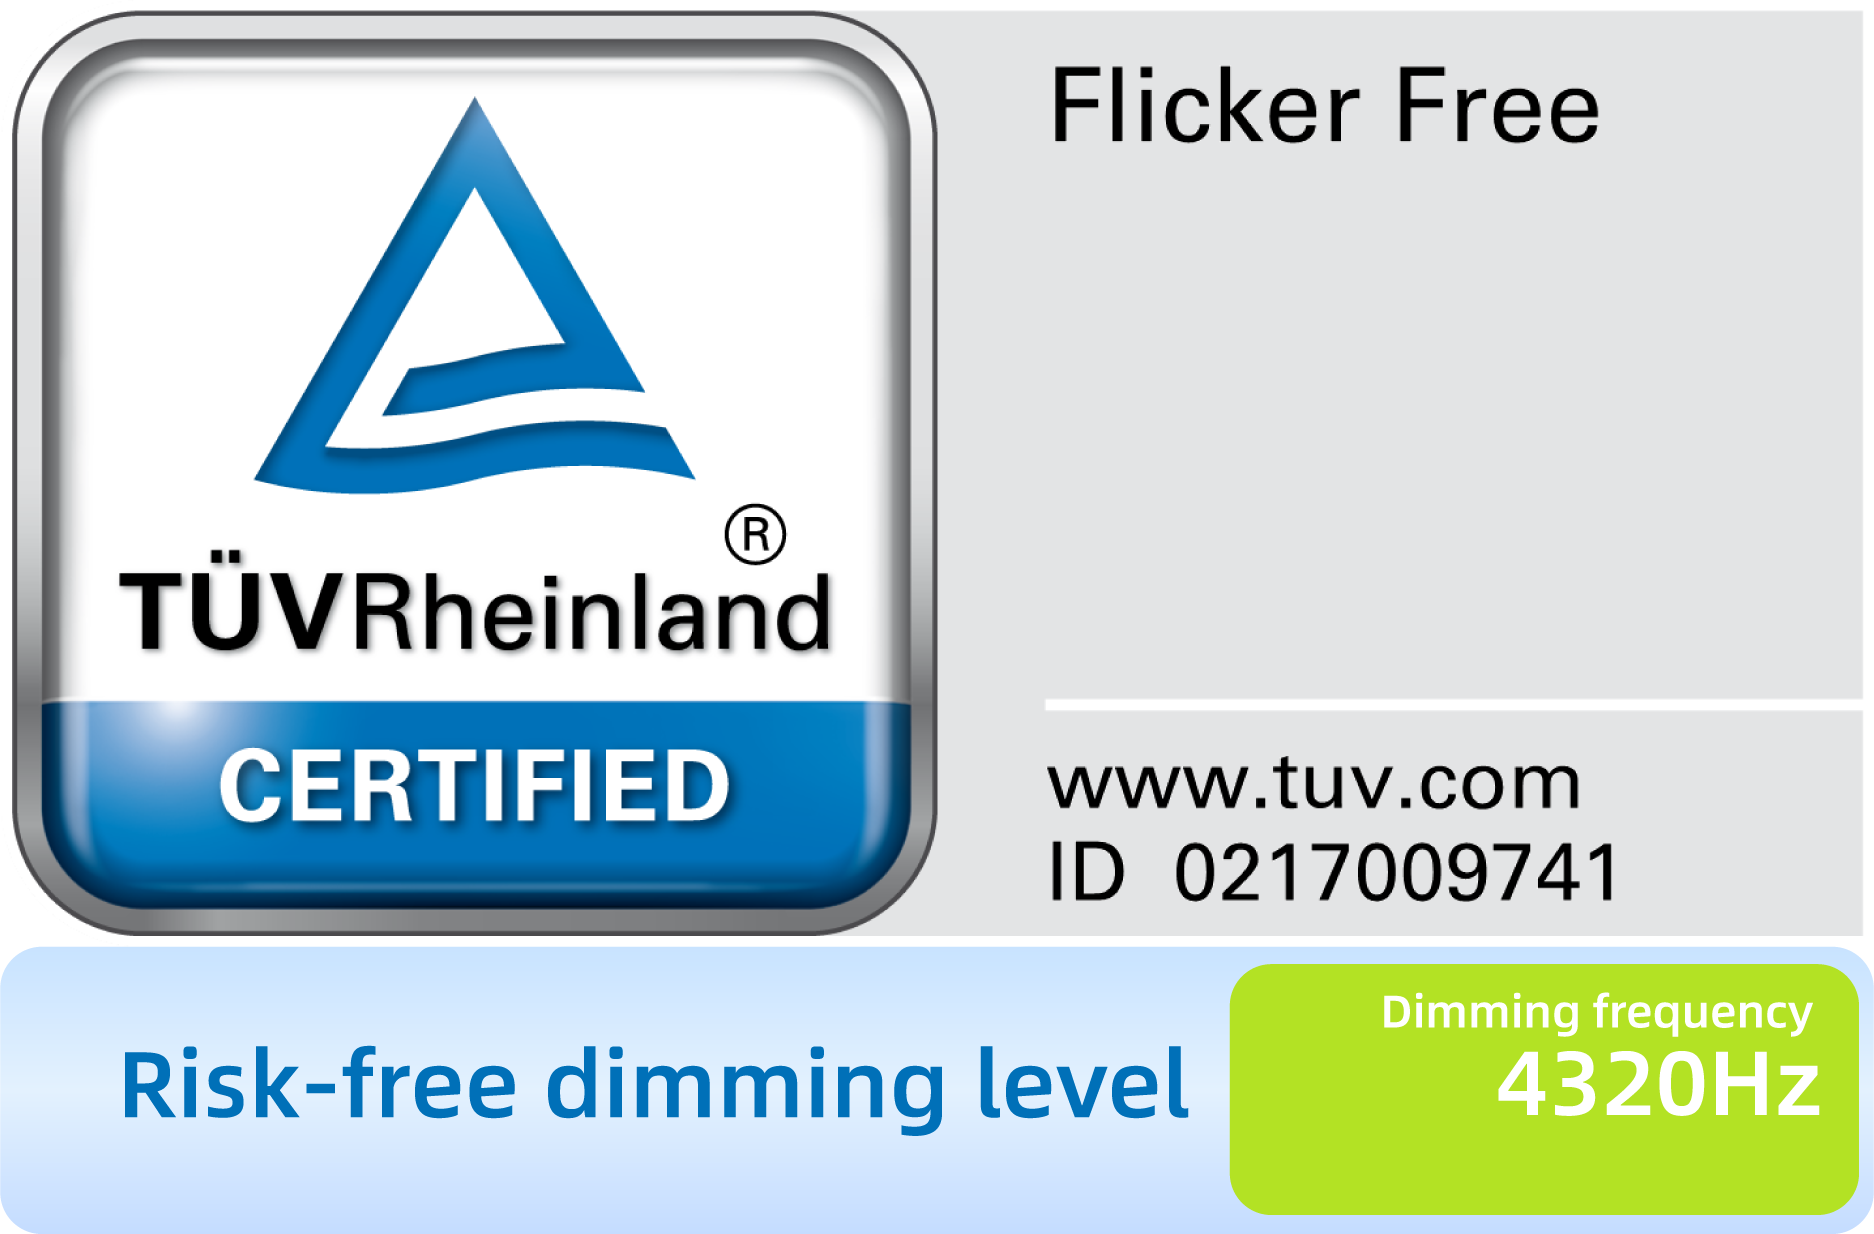 TÜV Rheinland Flicker Free Certification.3